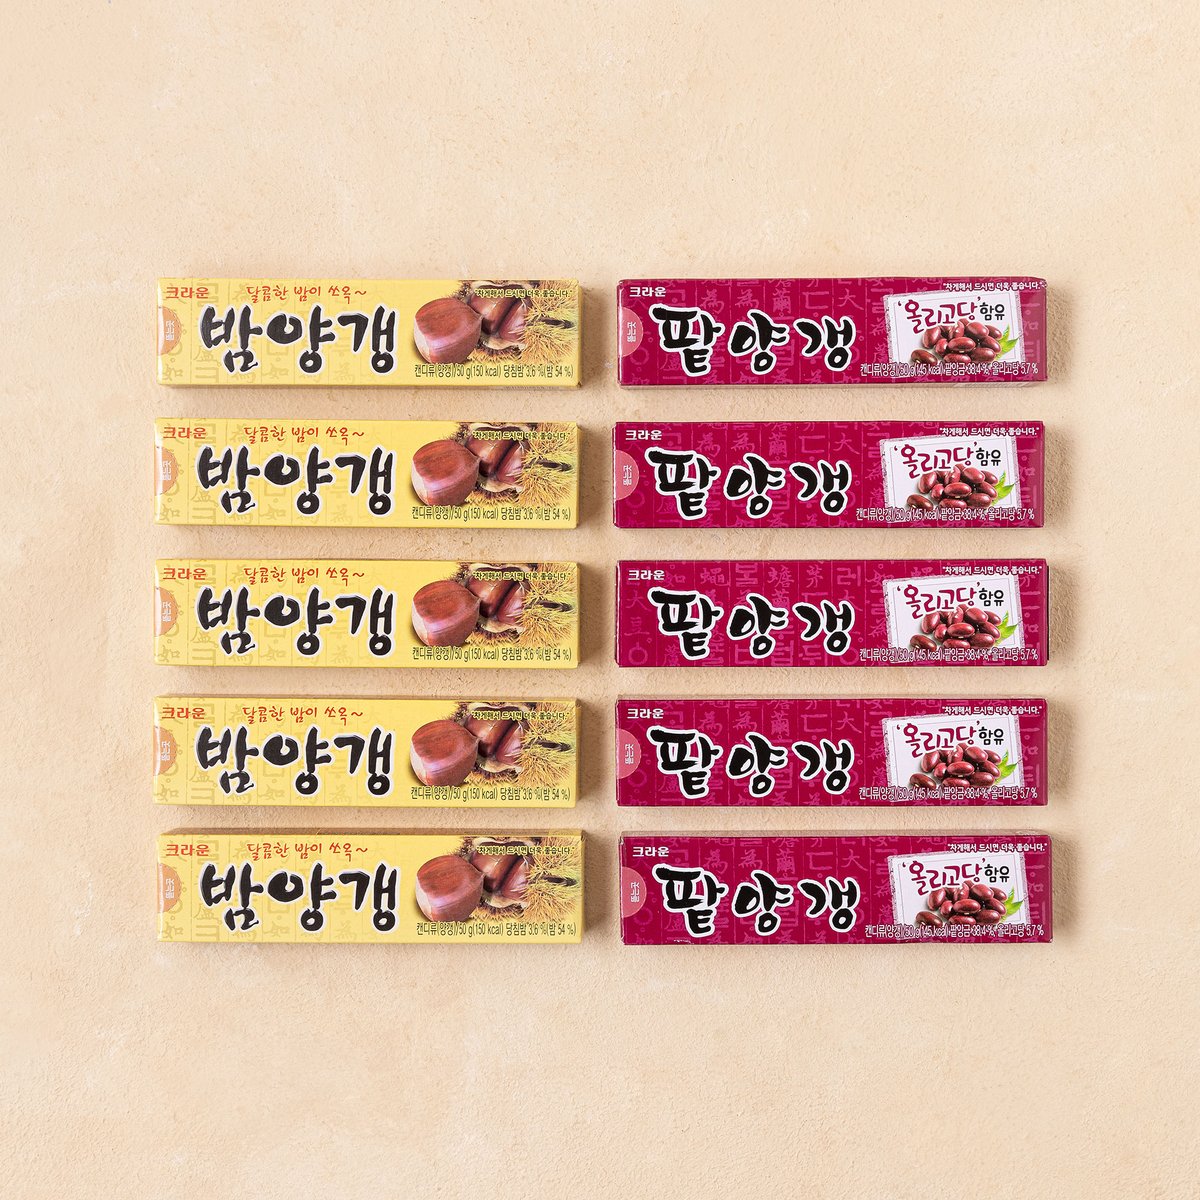 Korean Traditional Chestnut Jelly, Red bean Snack Bam Yang Gang